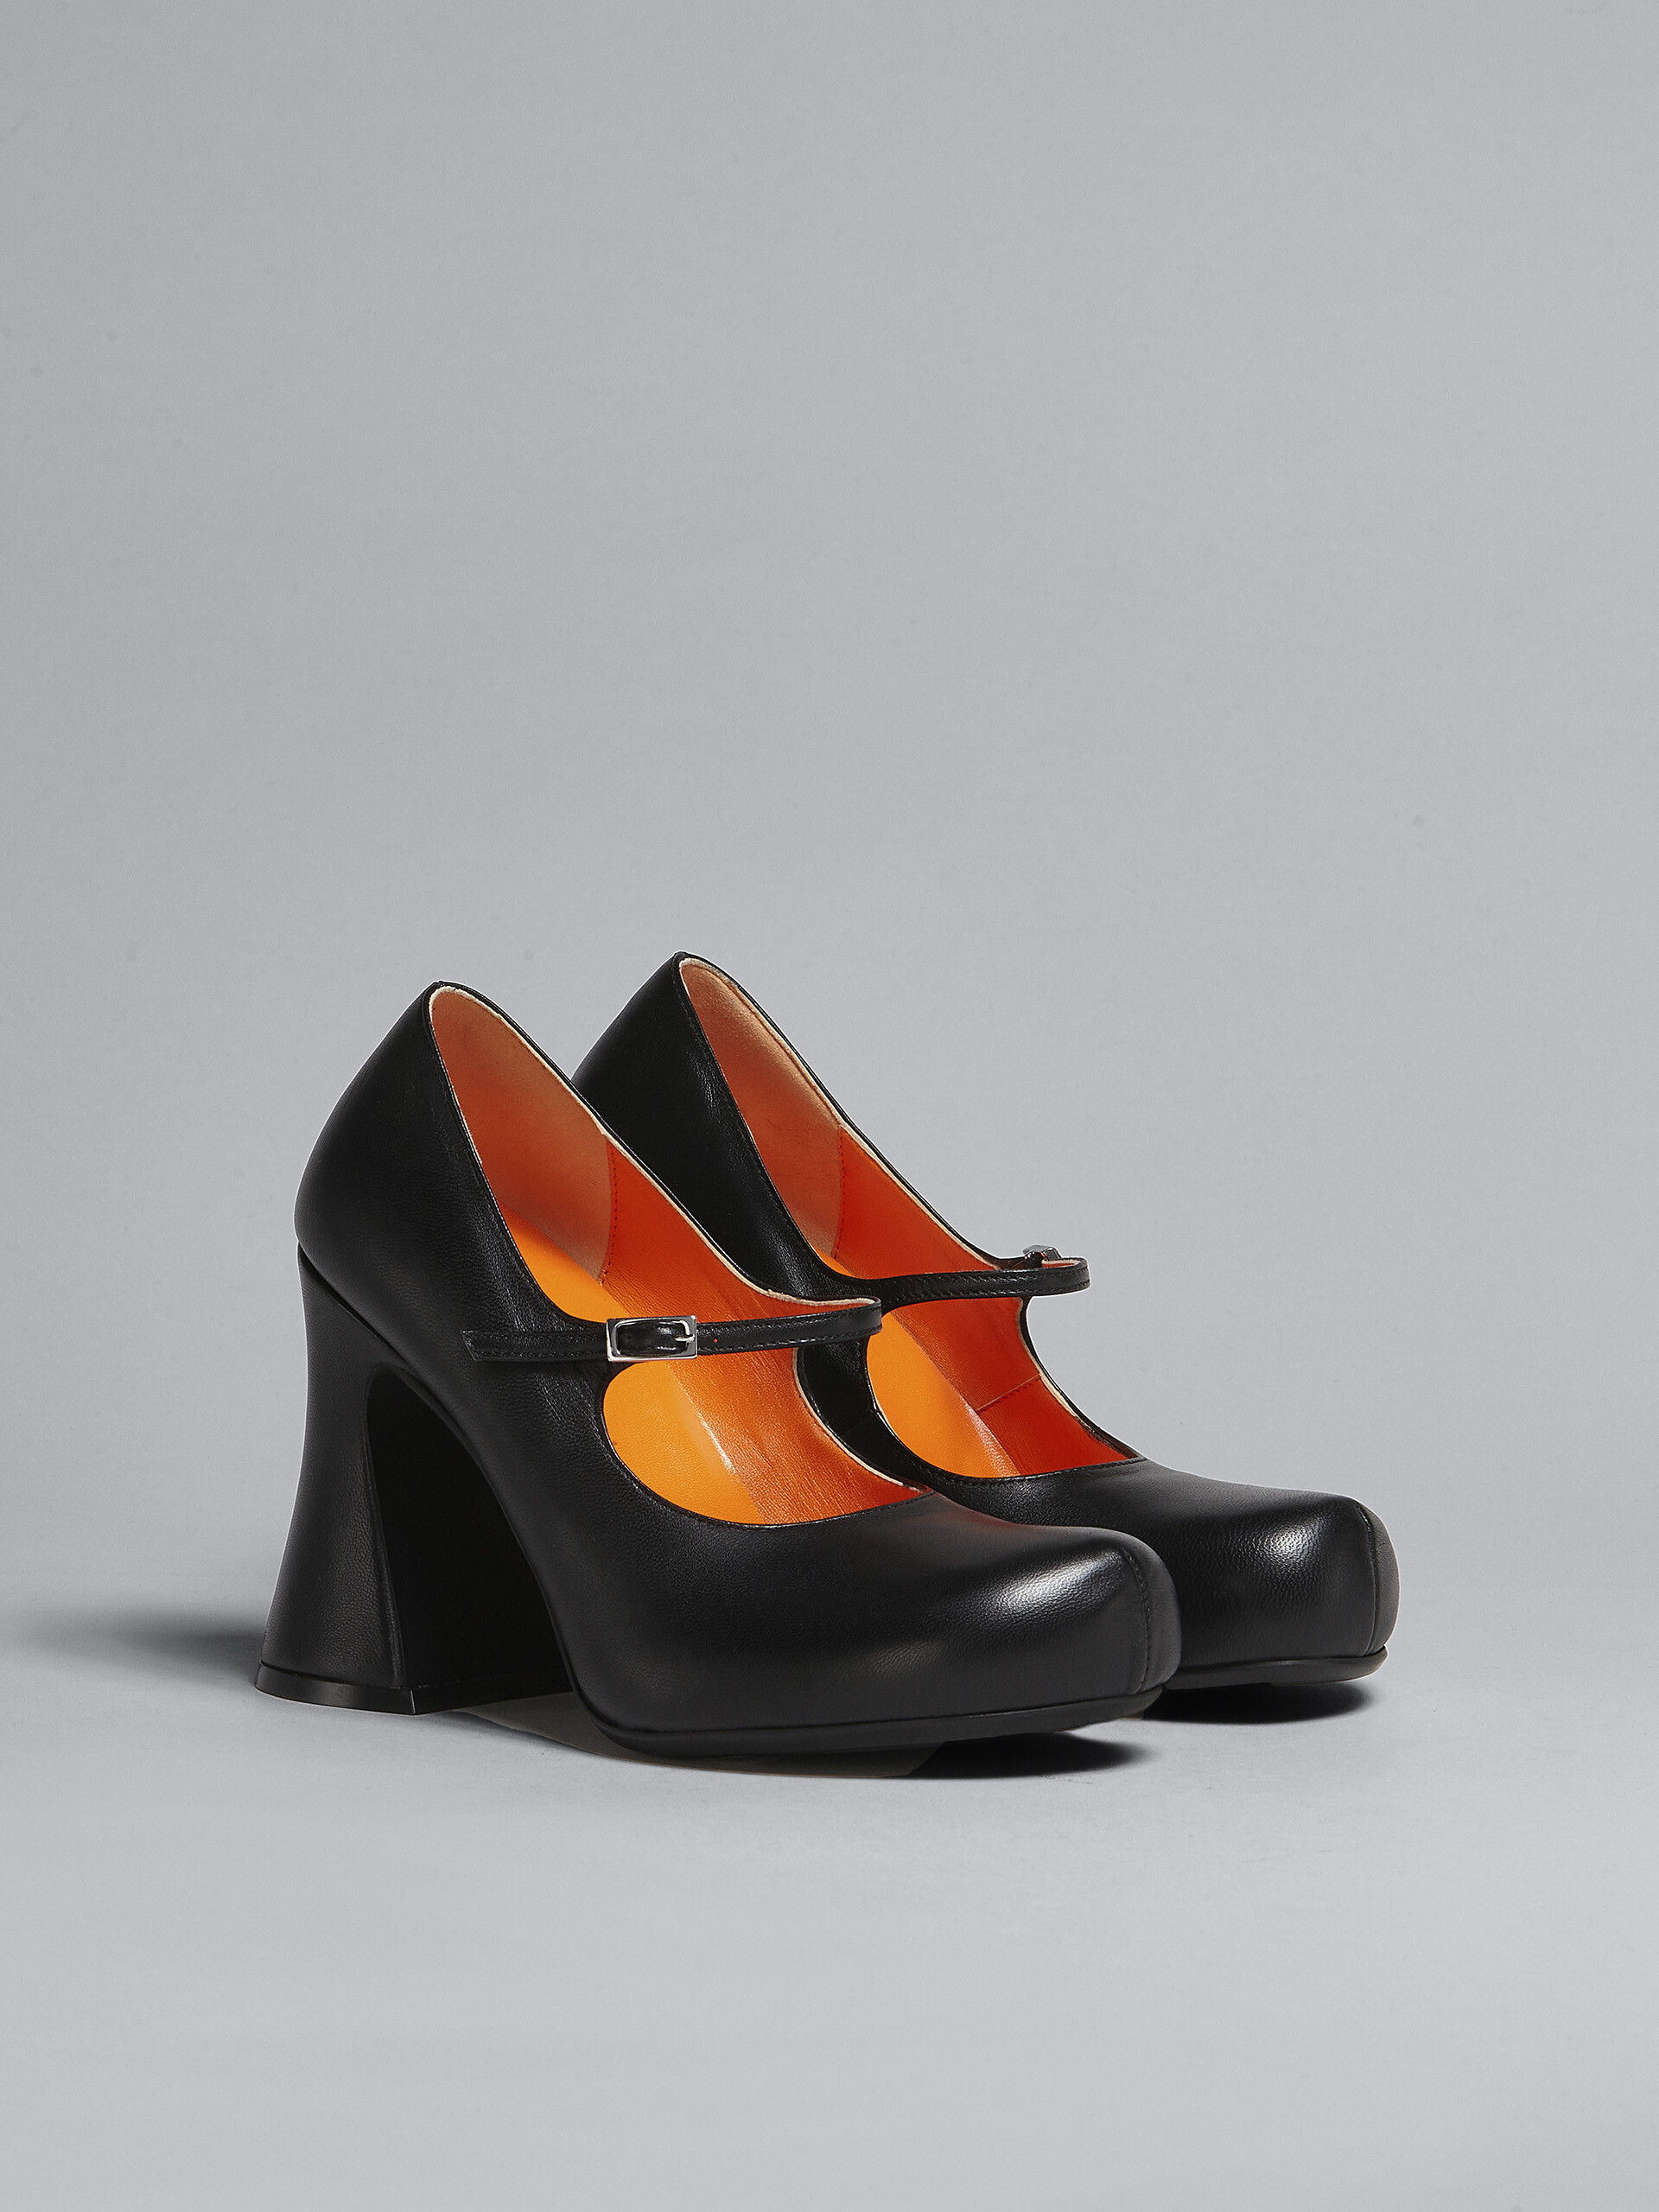 Zapatos de salón Mary Jane de piel negra - Salones - Image 2